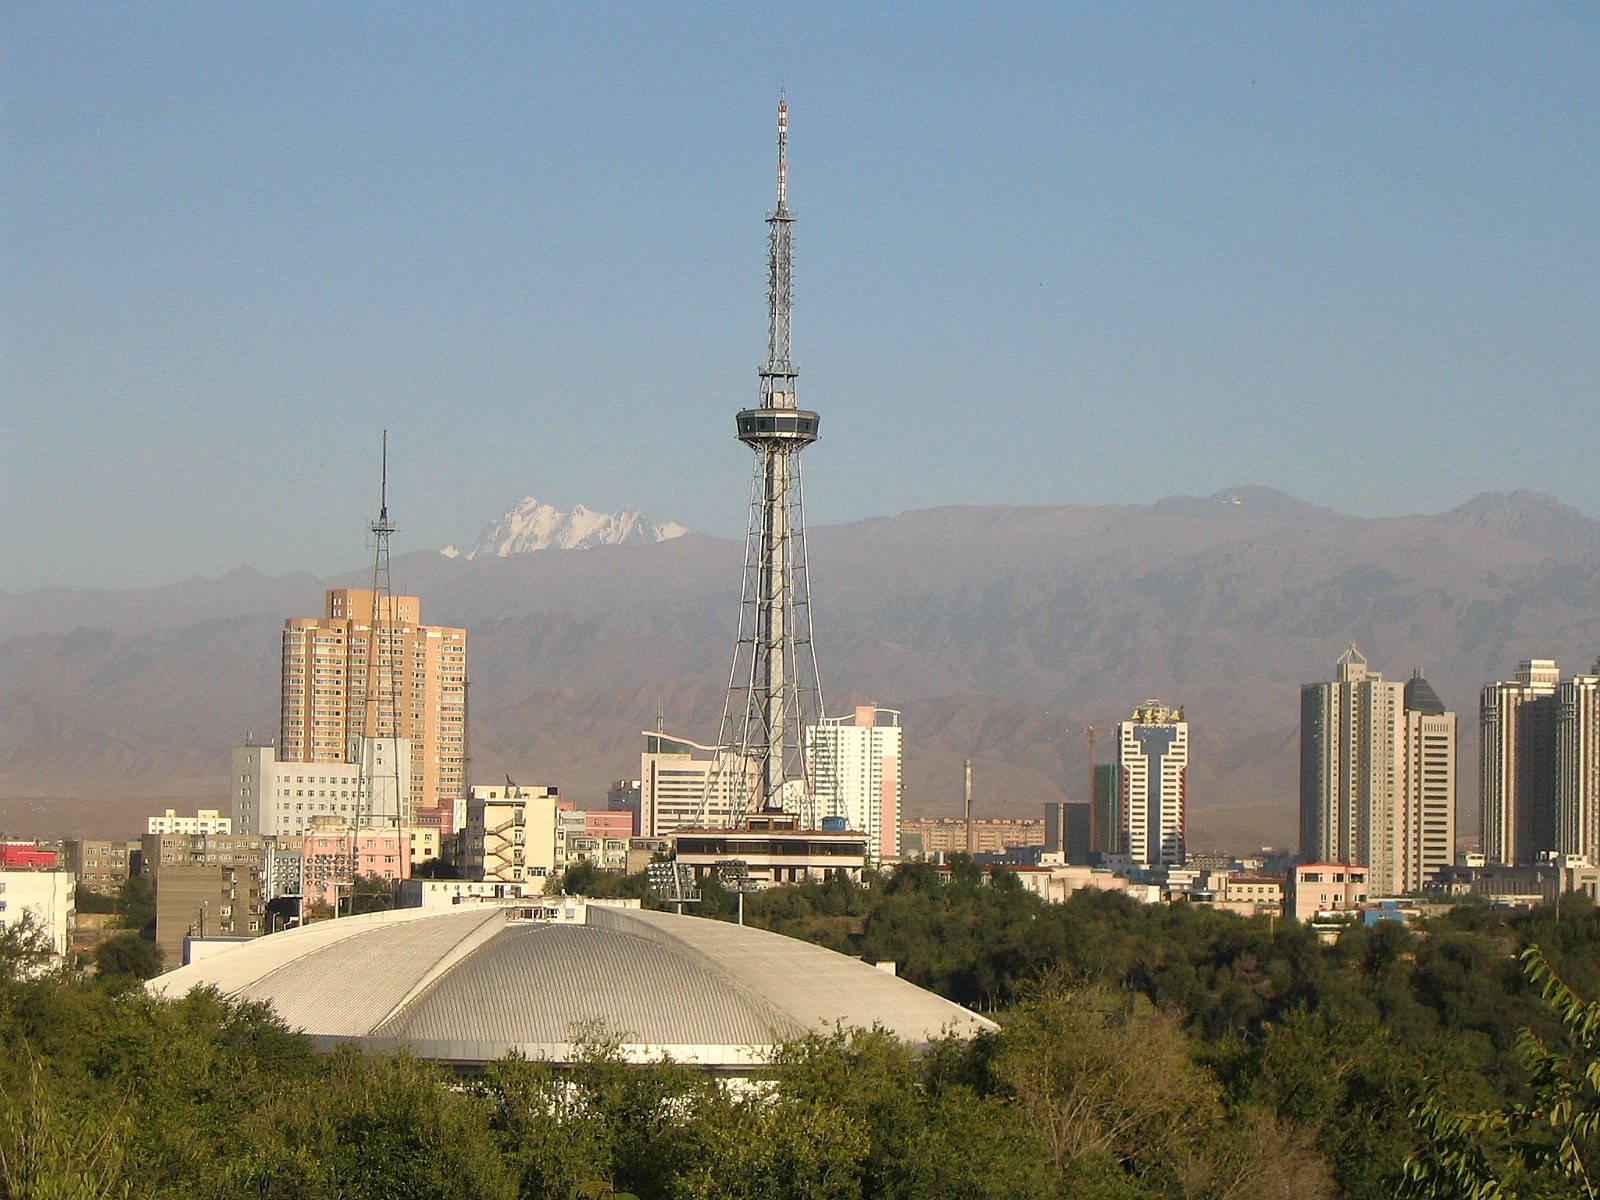 B0A Urumqi, Xinjiang, China